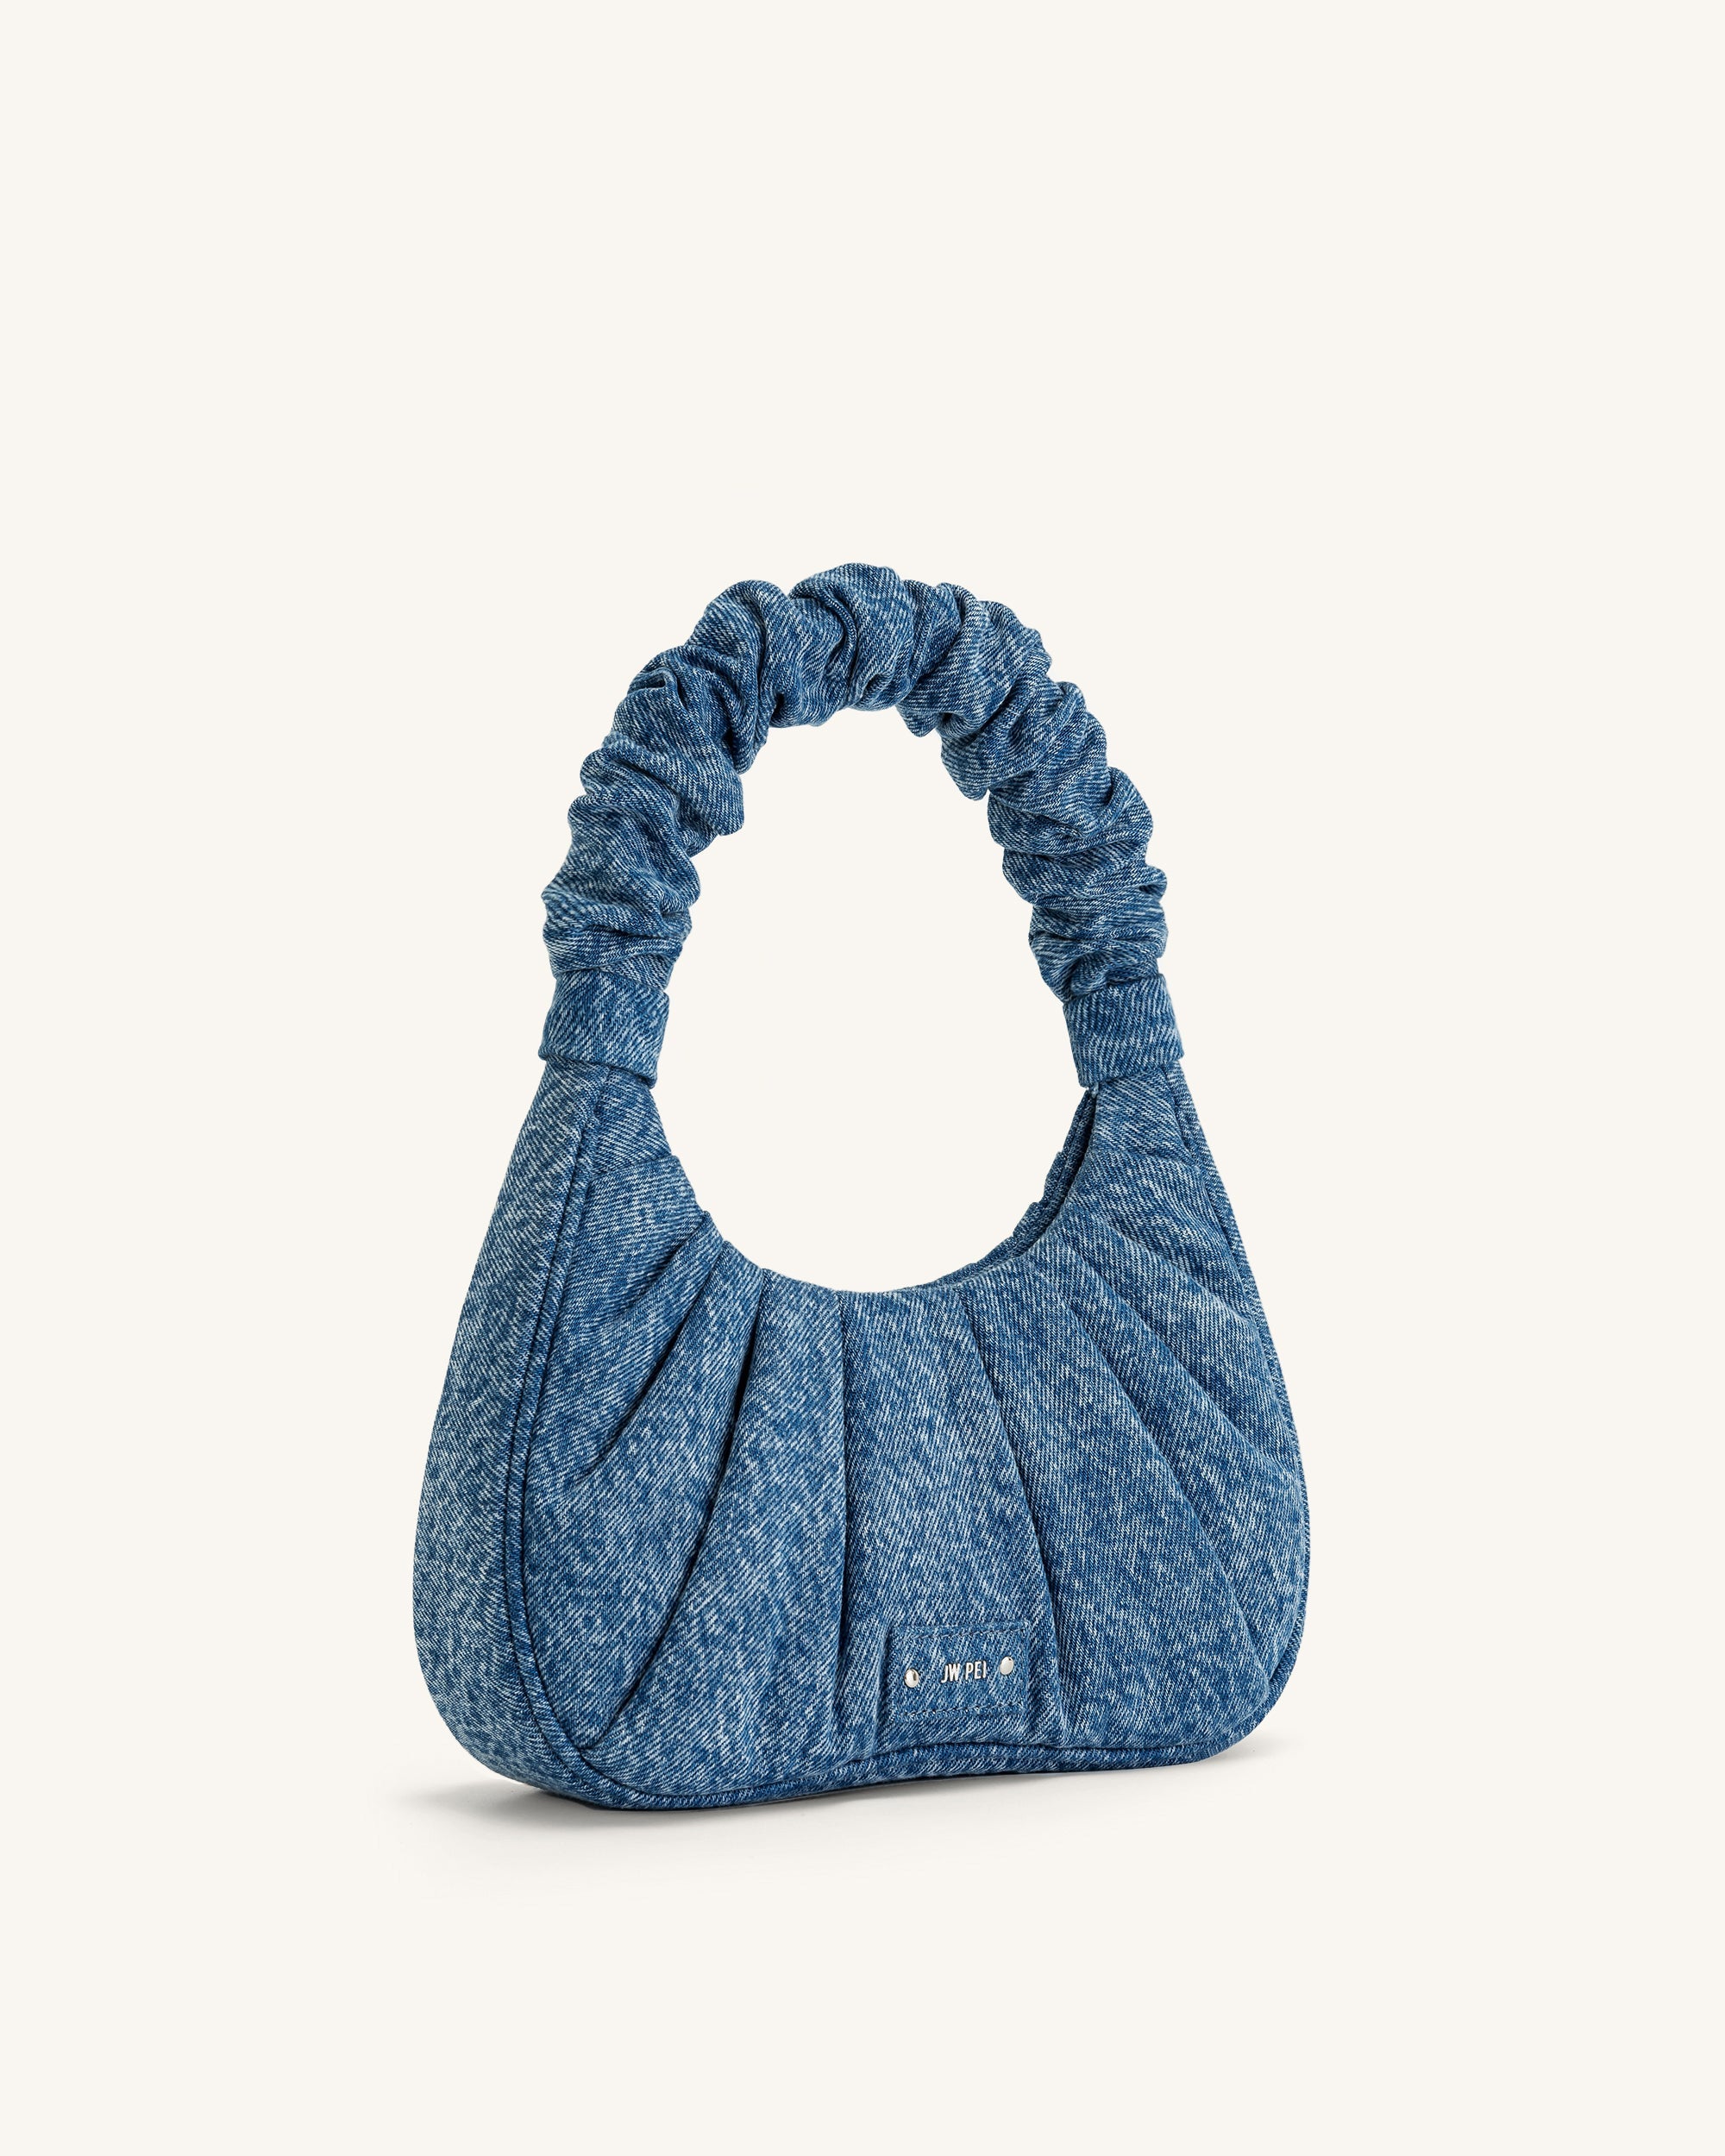 Medium sky blue hobo bag